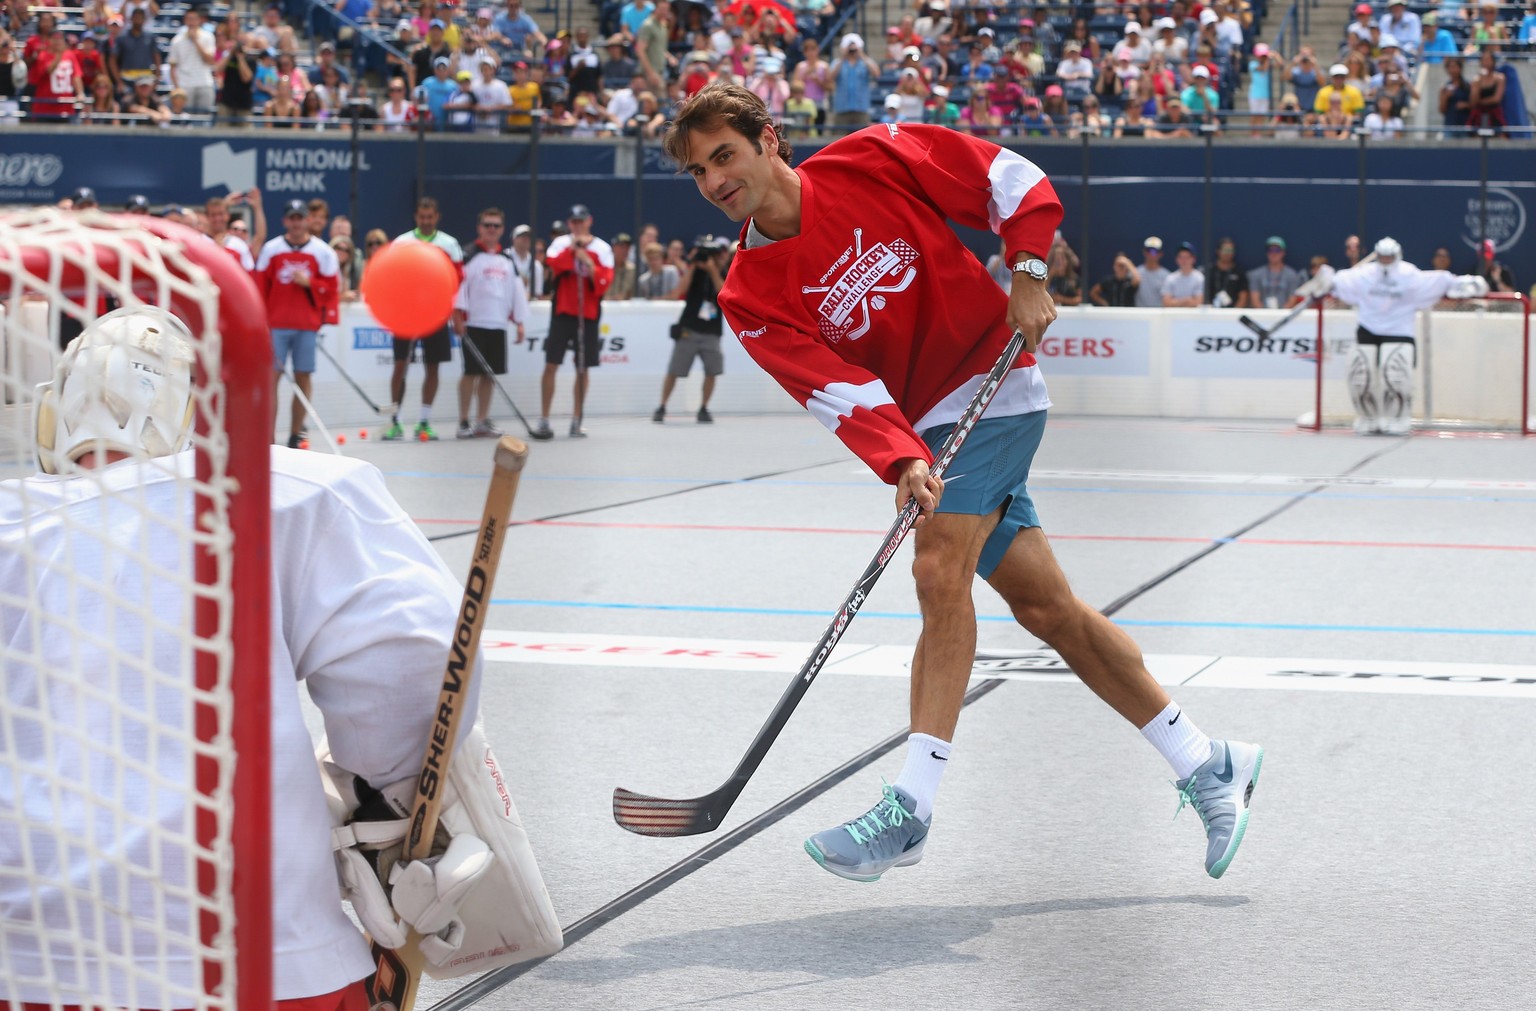 Das Lächeln im Gesicht als Beleg dafür, dass Roger Federer grossen Spass am Hockeymatch hatte.